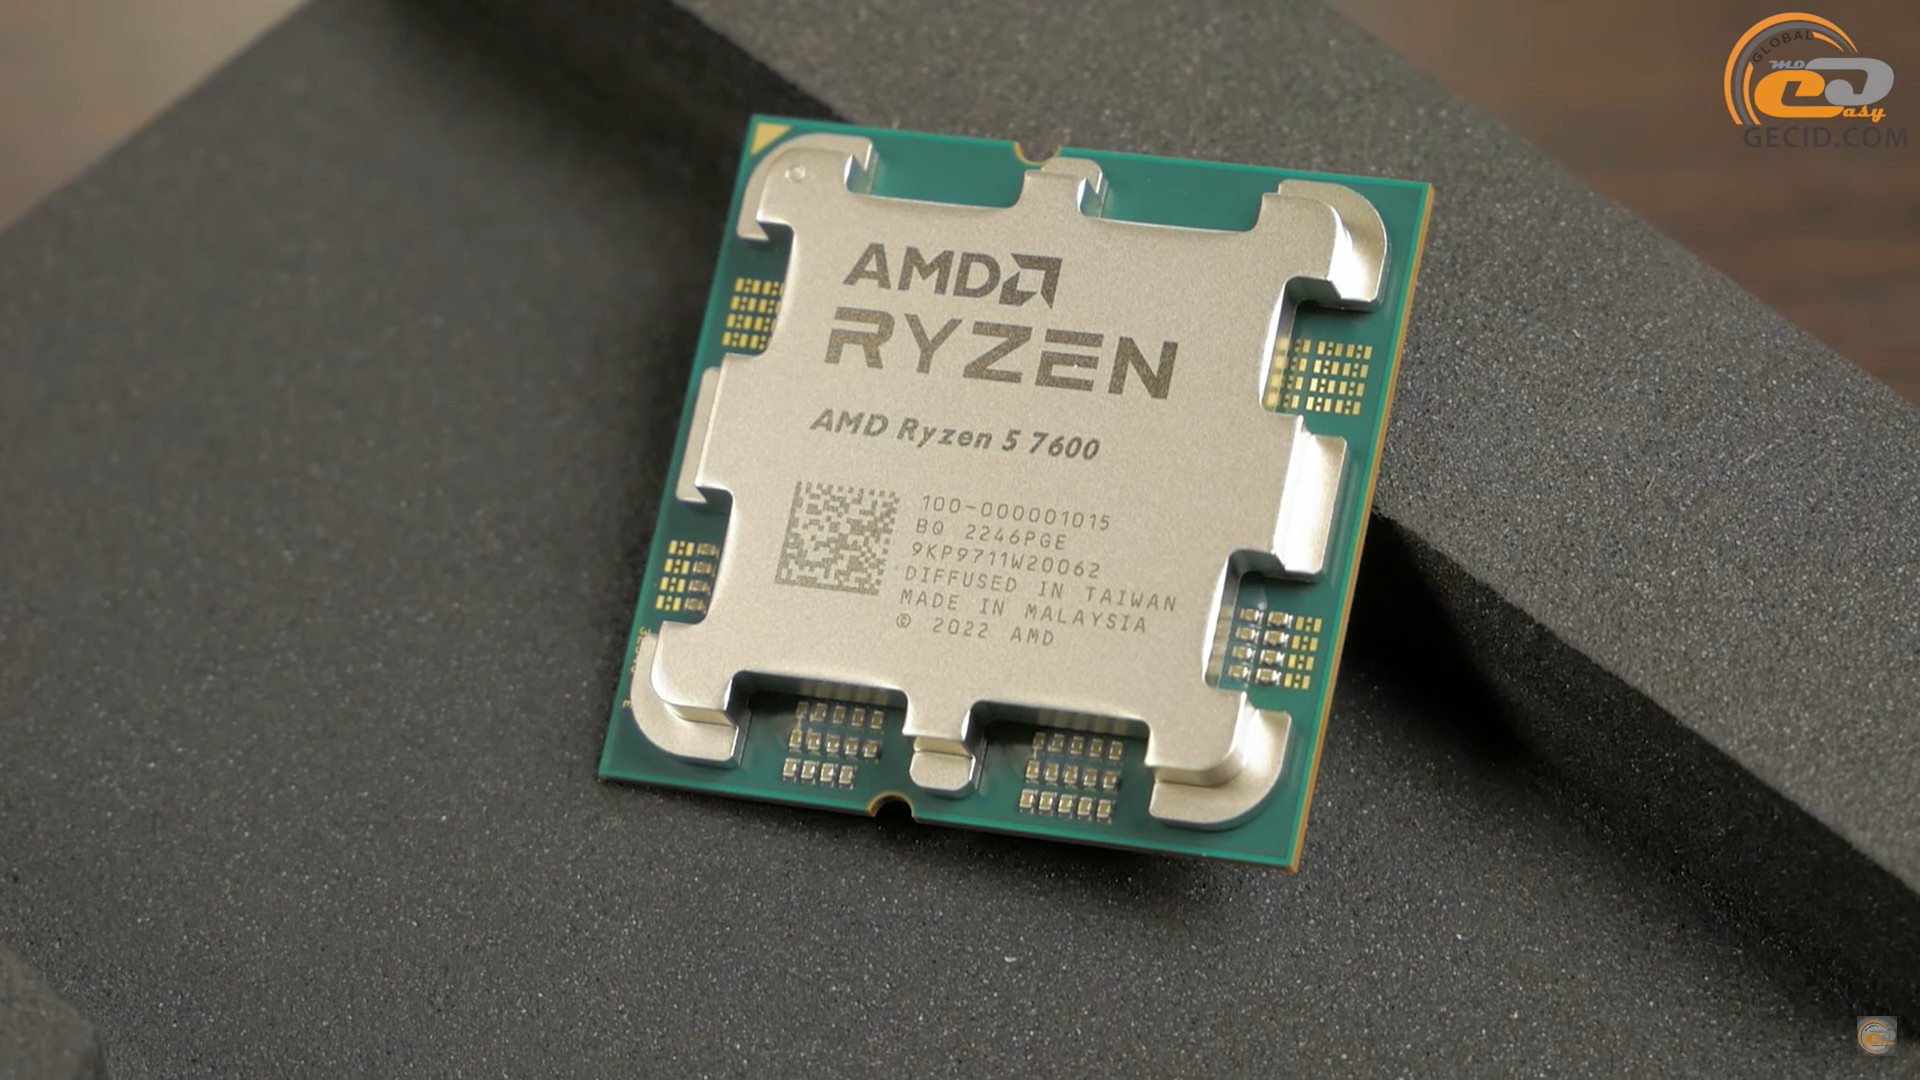 Ryzen 5 7600x am5. Процессор - AMD Ryzen 5 7600x am5. I5 7600.